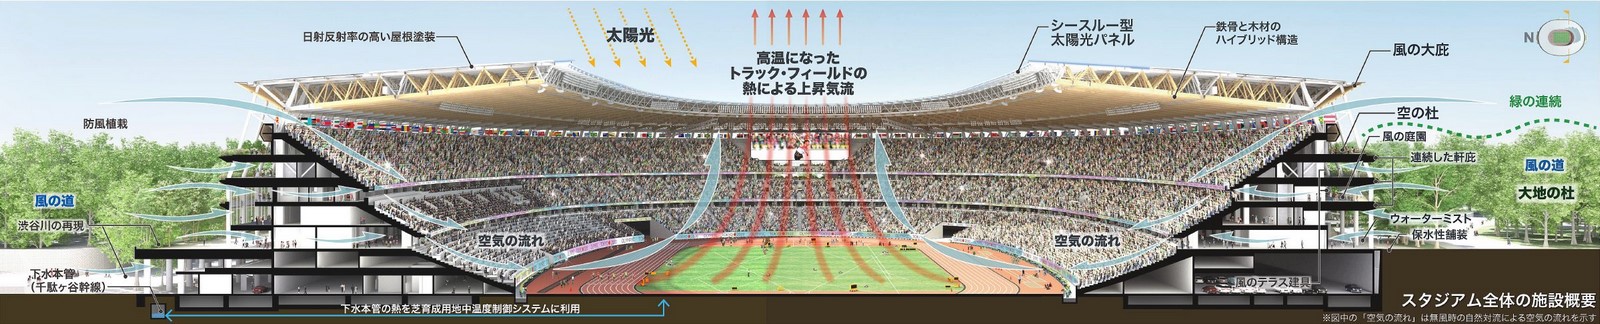 New Tokyo National Stadium - Tokyo, Japan - Sheet3